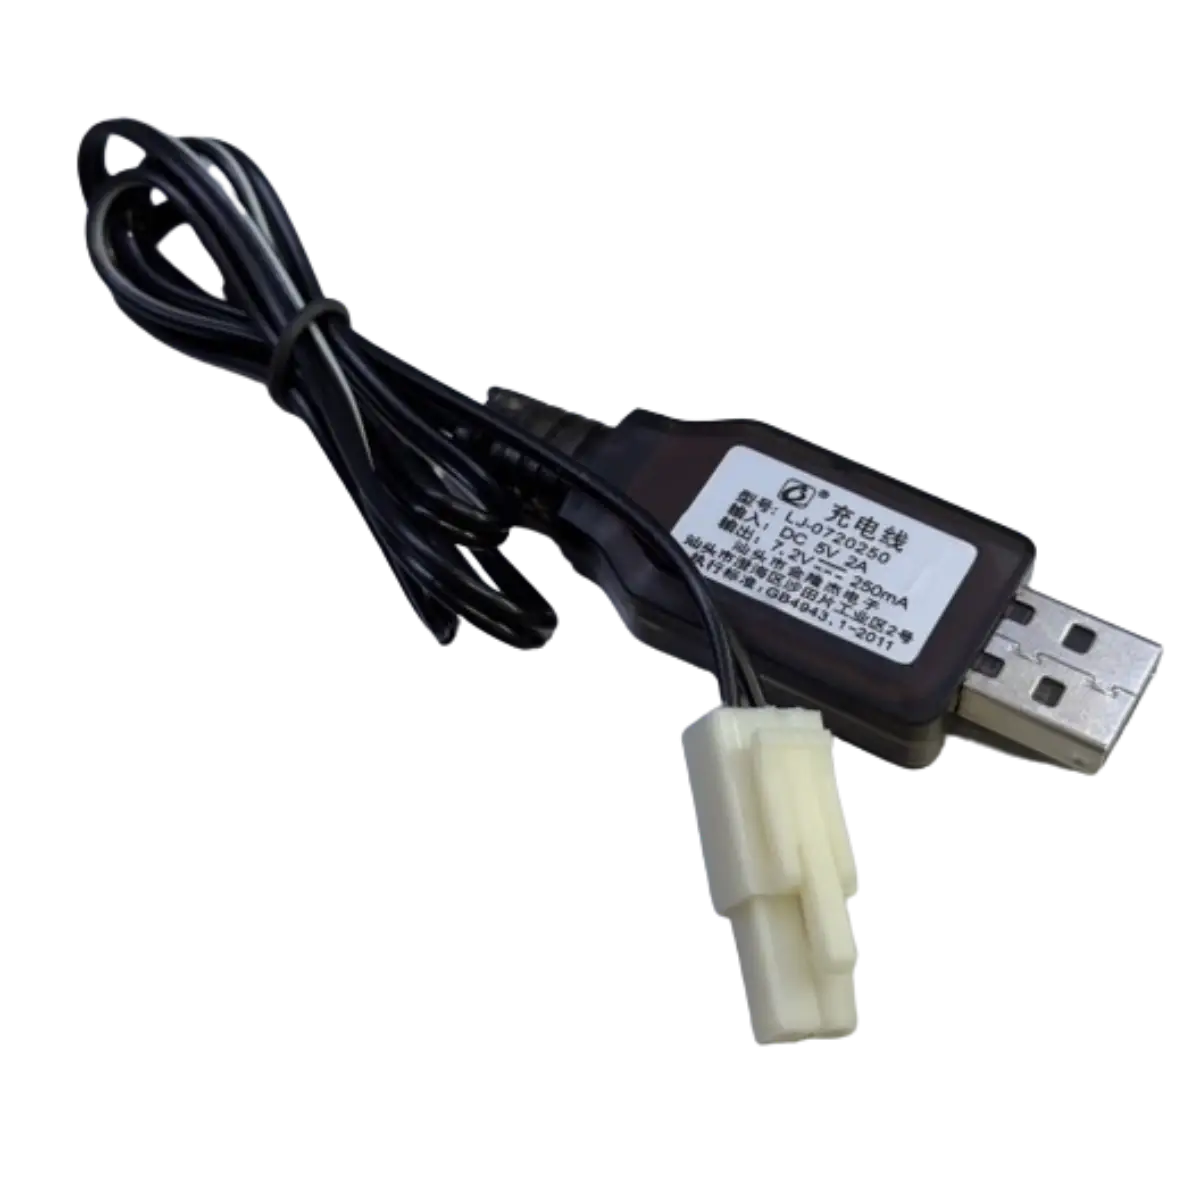 Chargeur USB 7.2V 250mA pour jouets radiocommandés, voitures etc..